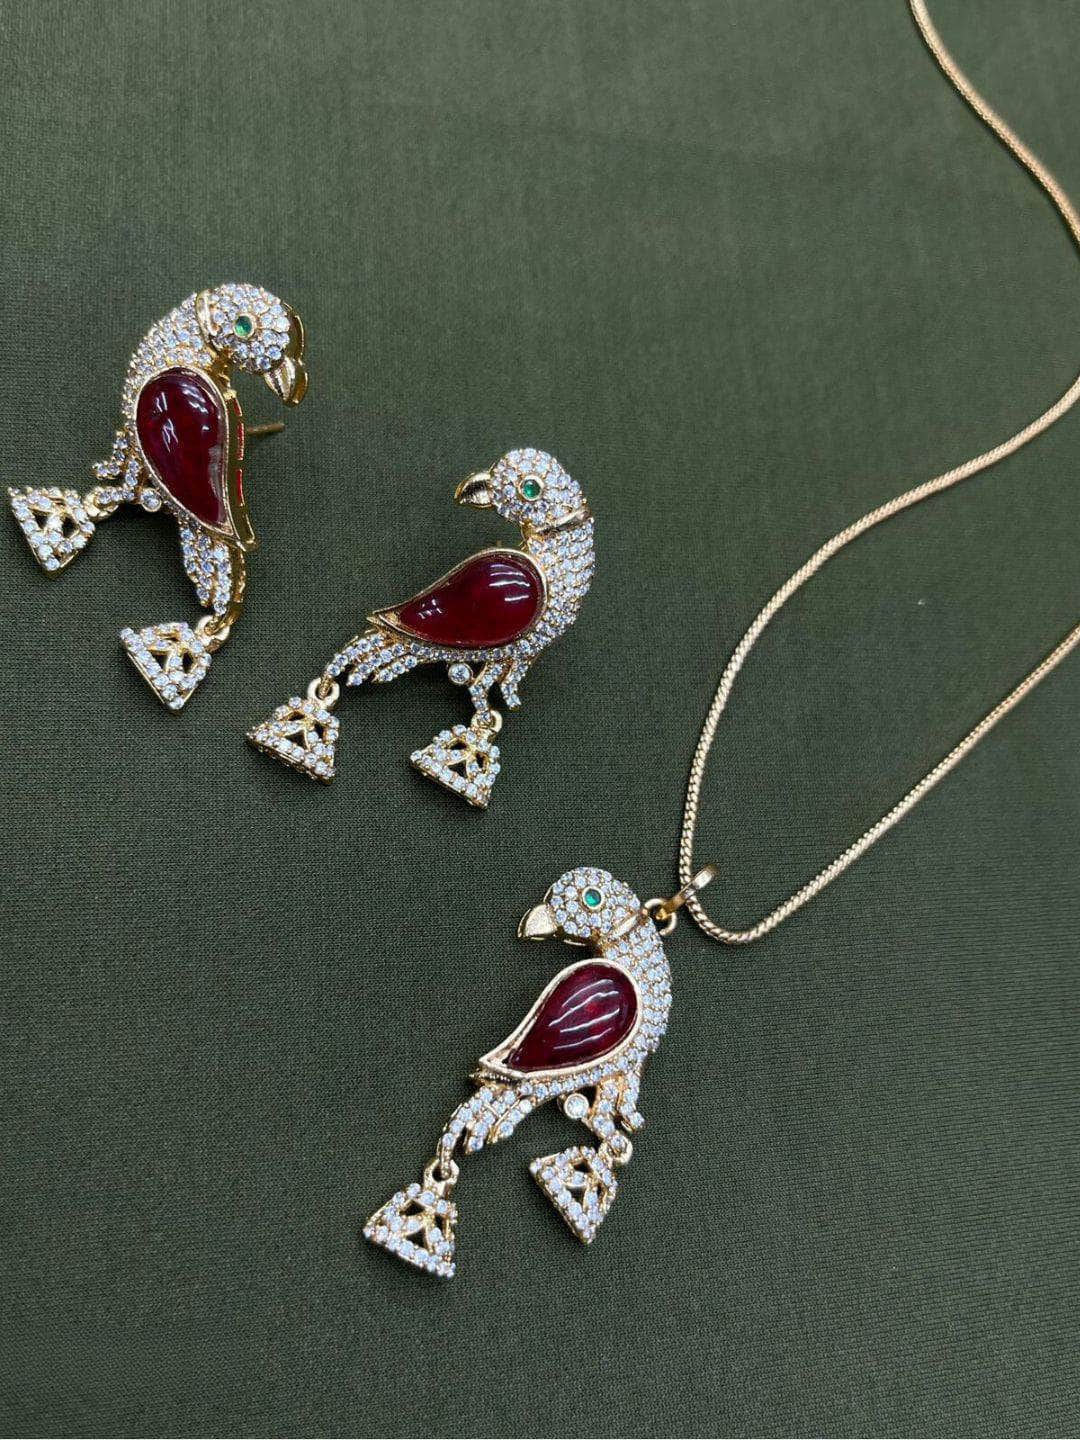 Ishhaara Red Emperor Fairywren Pendant Necklace Set